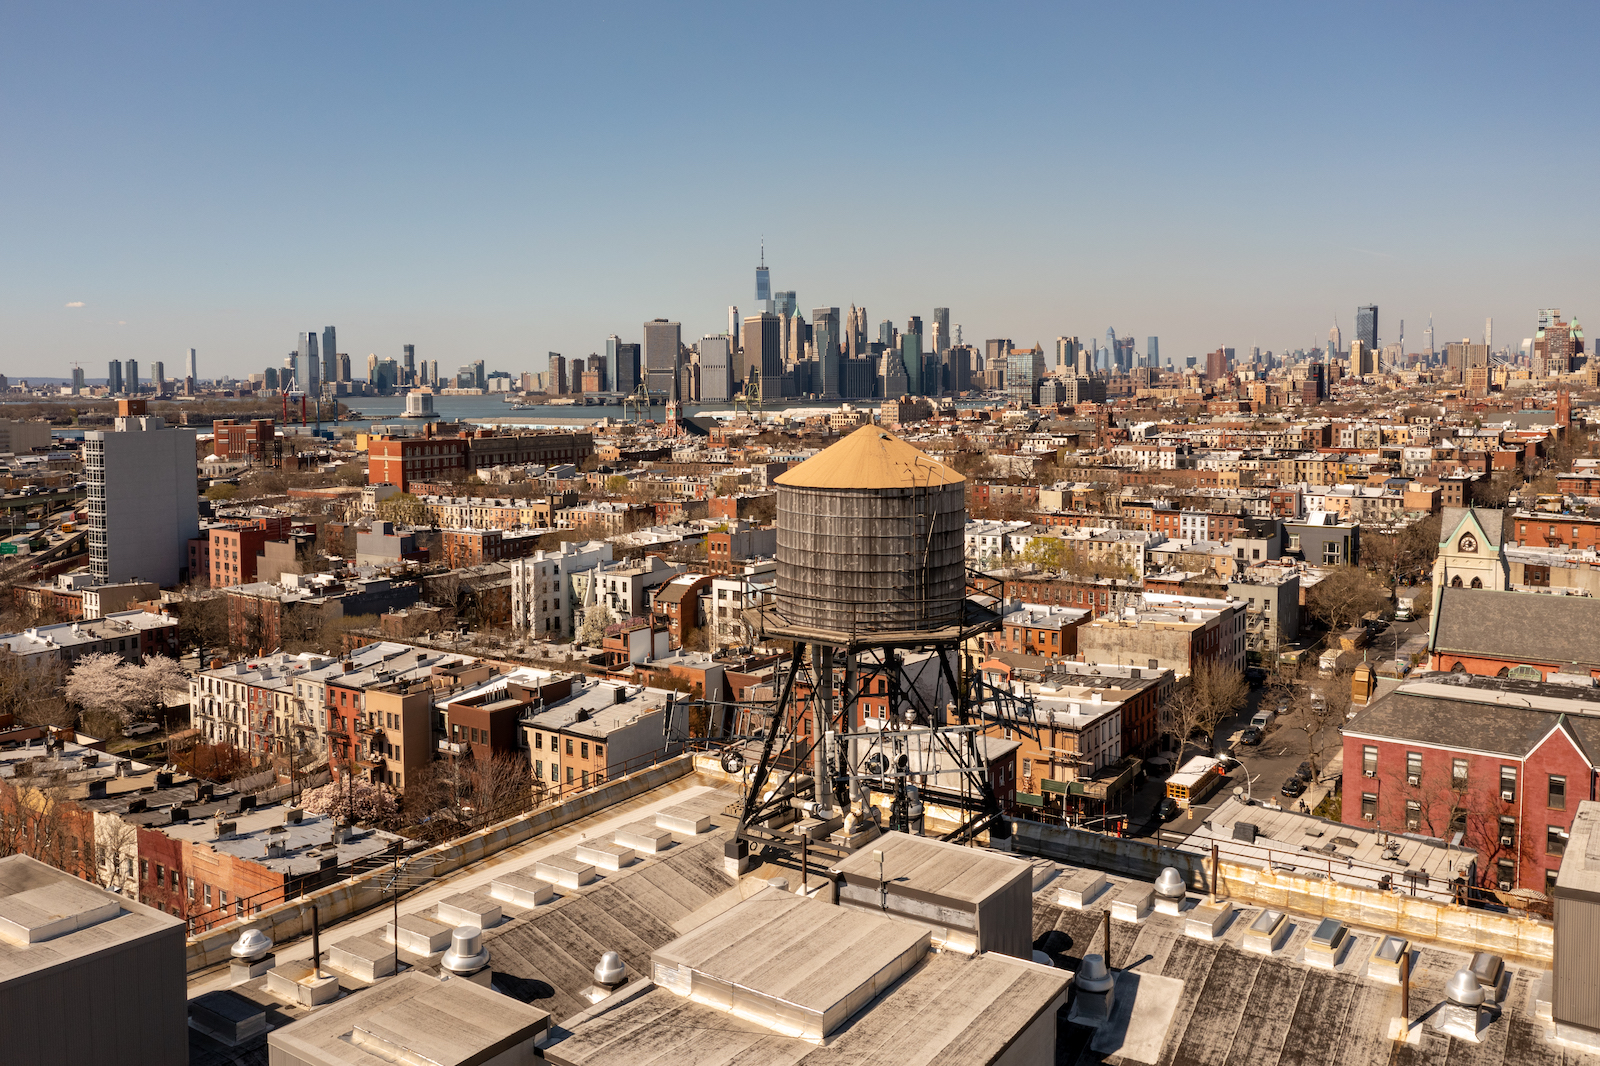 Gowanus Brooklyn an aerial view